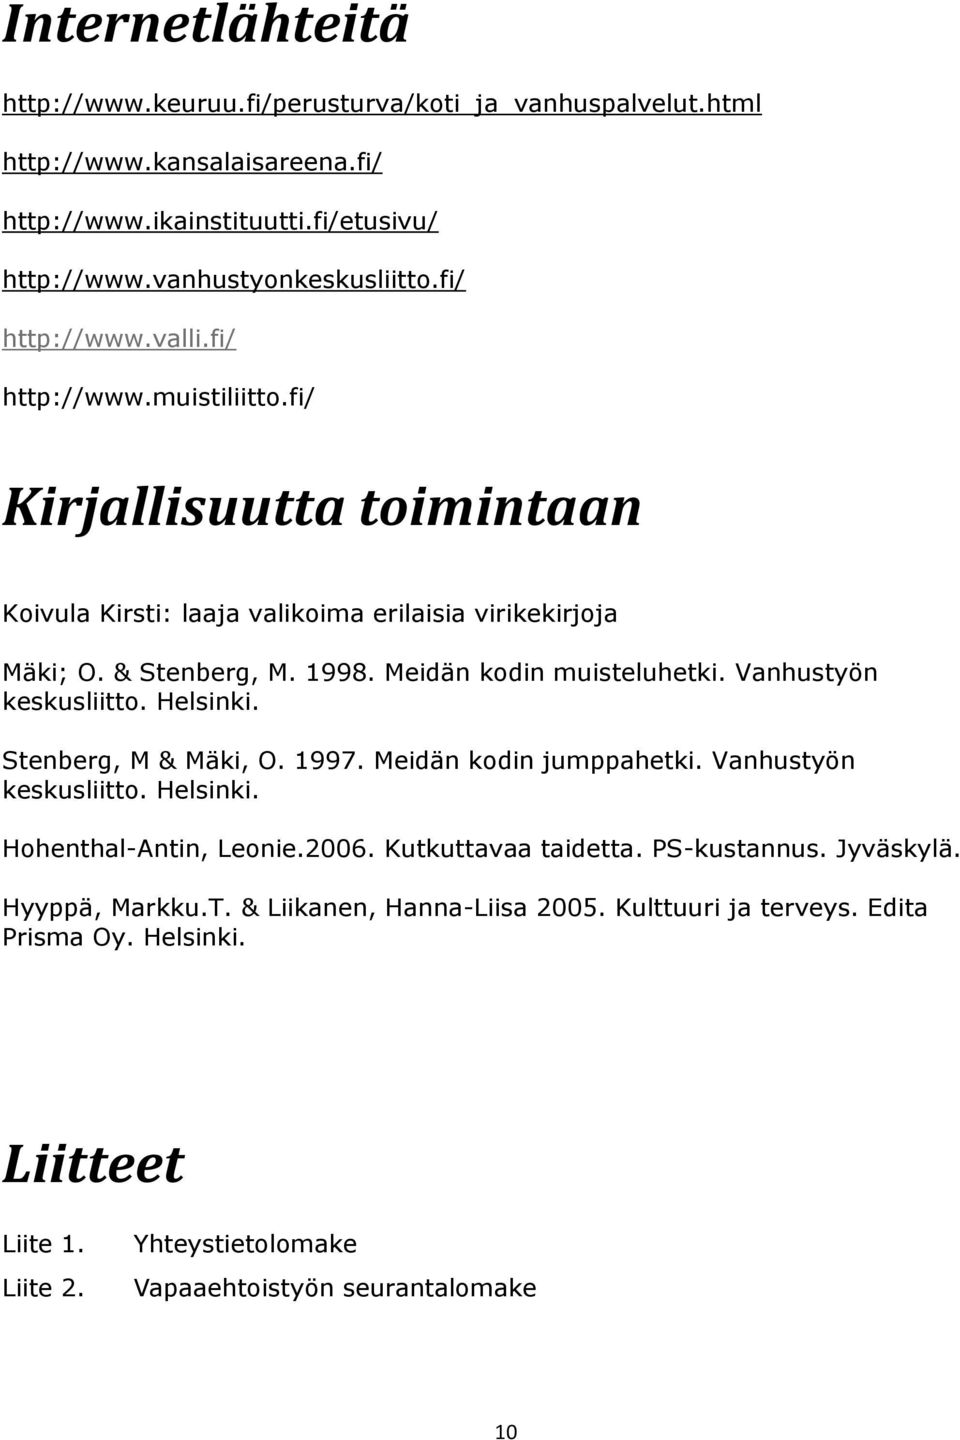 Meidän kodin muisteluhetki. Vanhustyön keskusliitto. Helsinki. Stenberg, M & Mäki, O. 1997. Meidän kodin jumppahetki. Vanhustyön keskusliitto. Helsinki. Hohenthal-Antin, Leonie.2006.